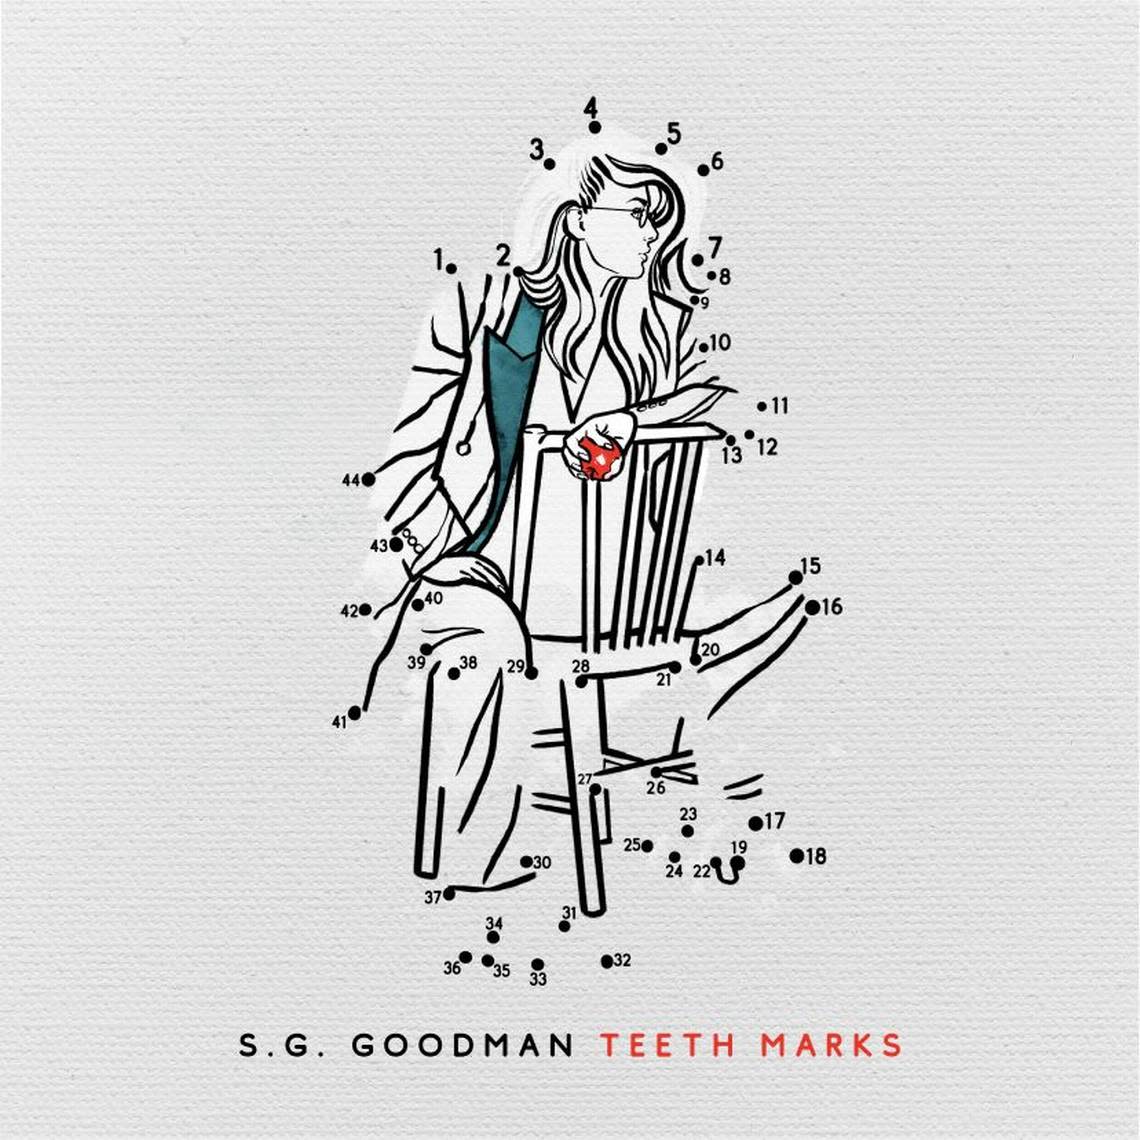 S.G. Goodman, “Teeth Marks”